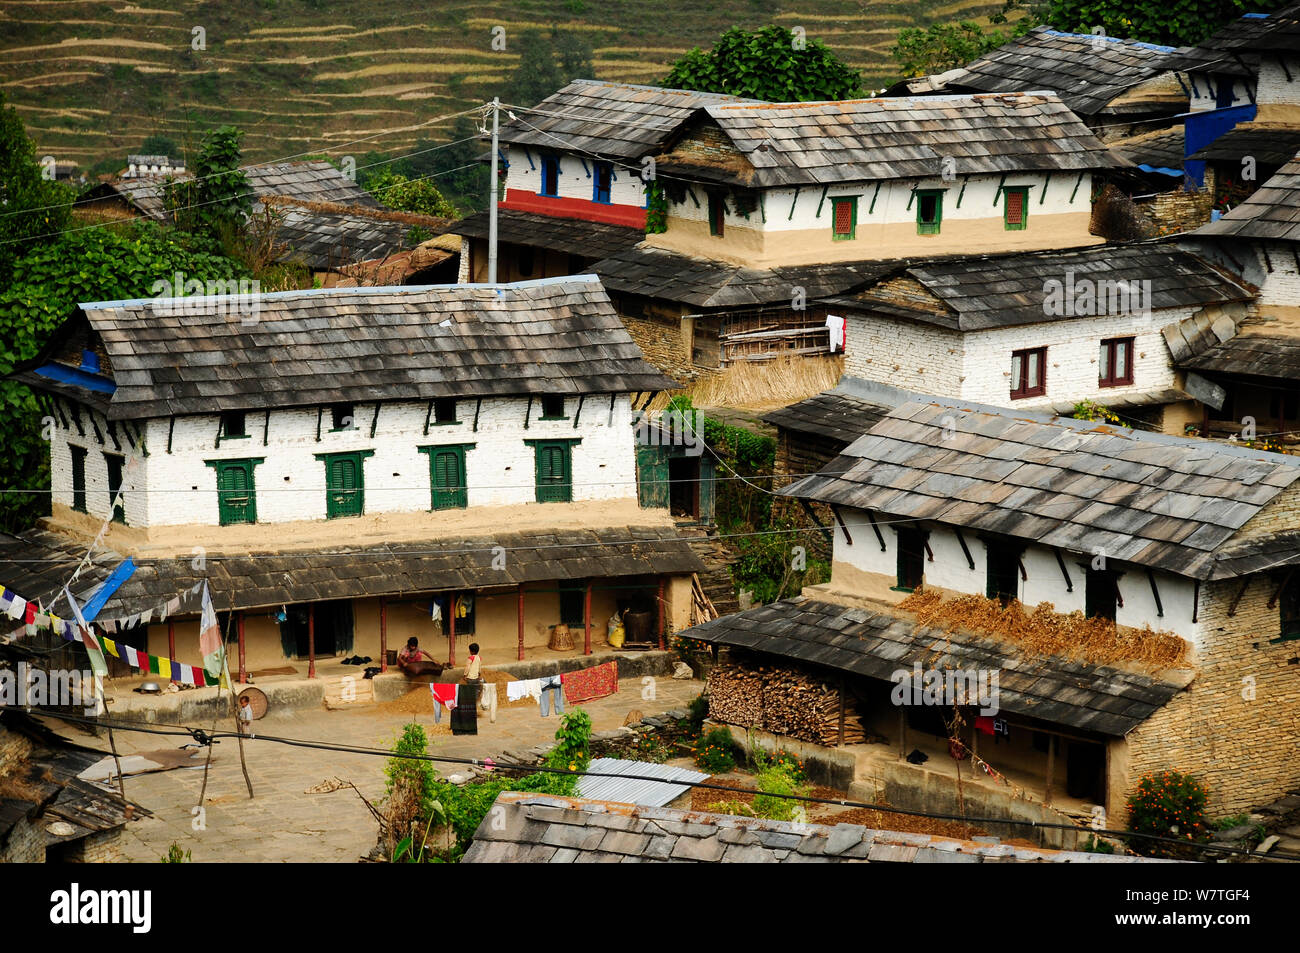 Dorf Ghandruk (in der Höhe von 1990 m) Annapurna Sanctuary, zentralen Nepal, November 2011. Stockfoto